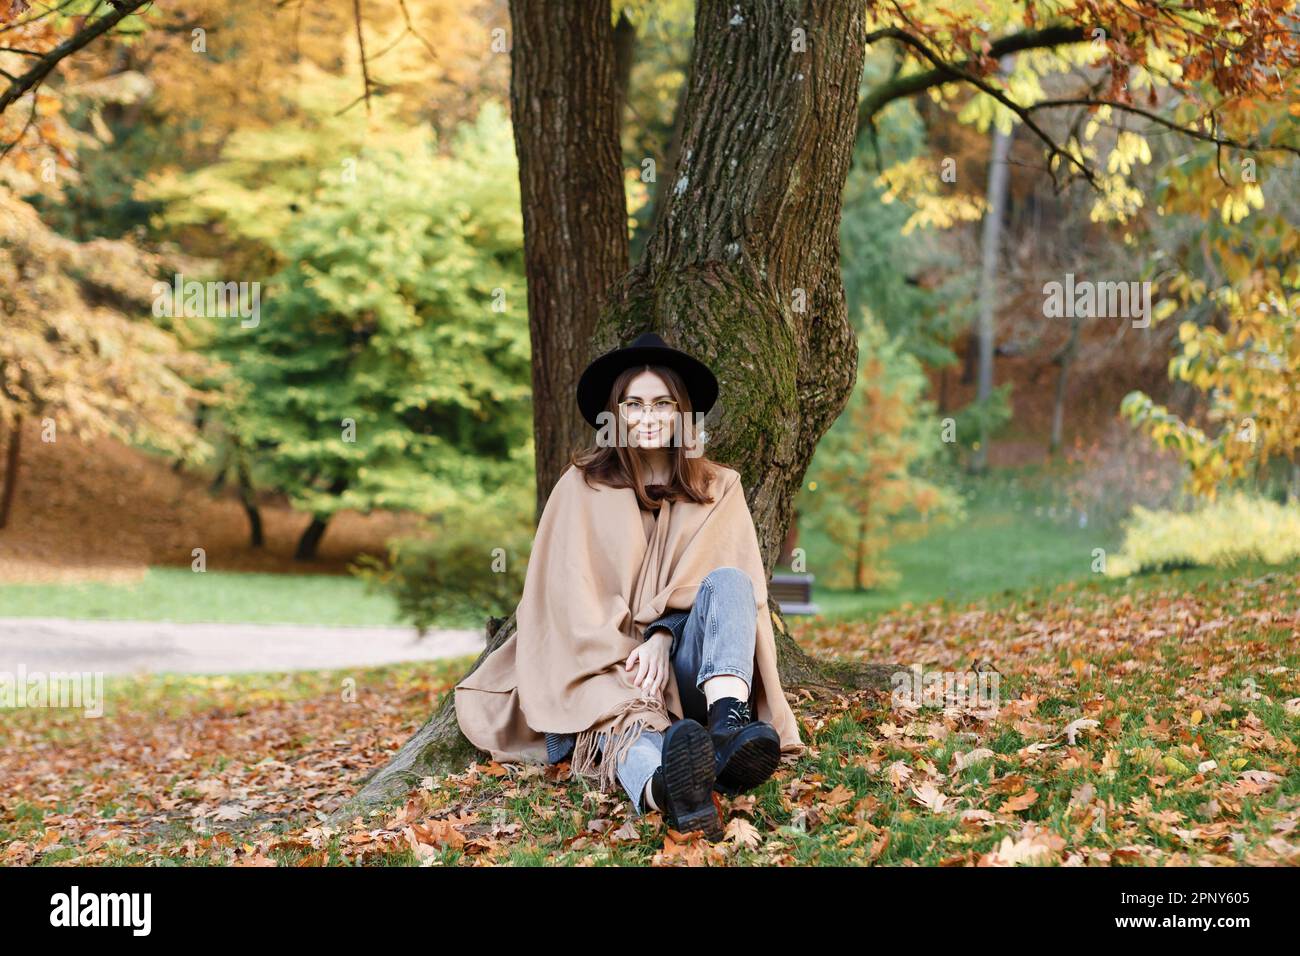 Braunhaarige Frau mit schwarzem Hut und Poncho im Park Stockfoto